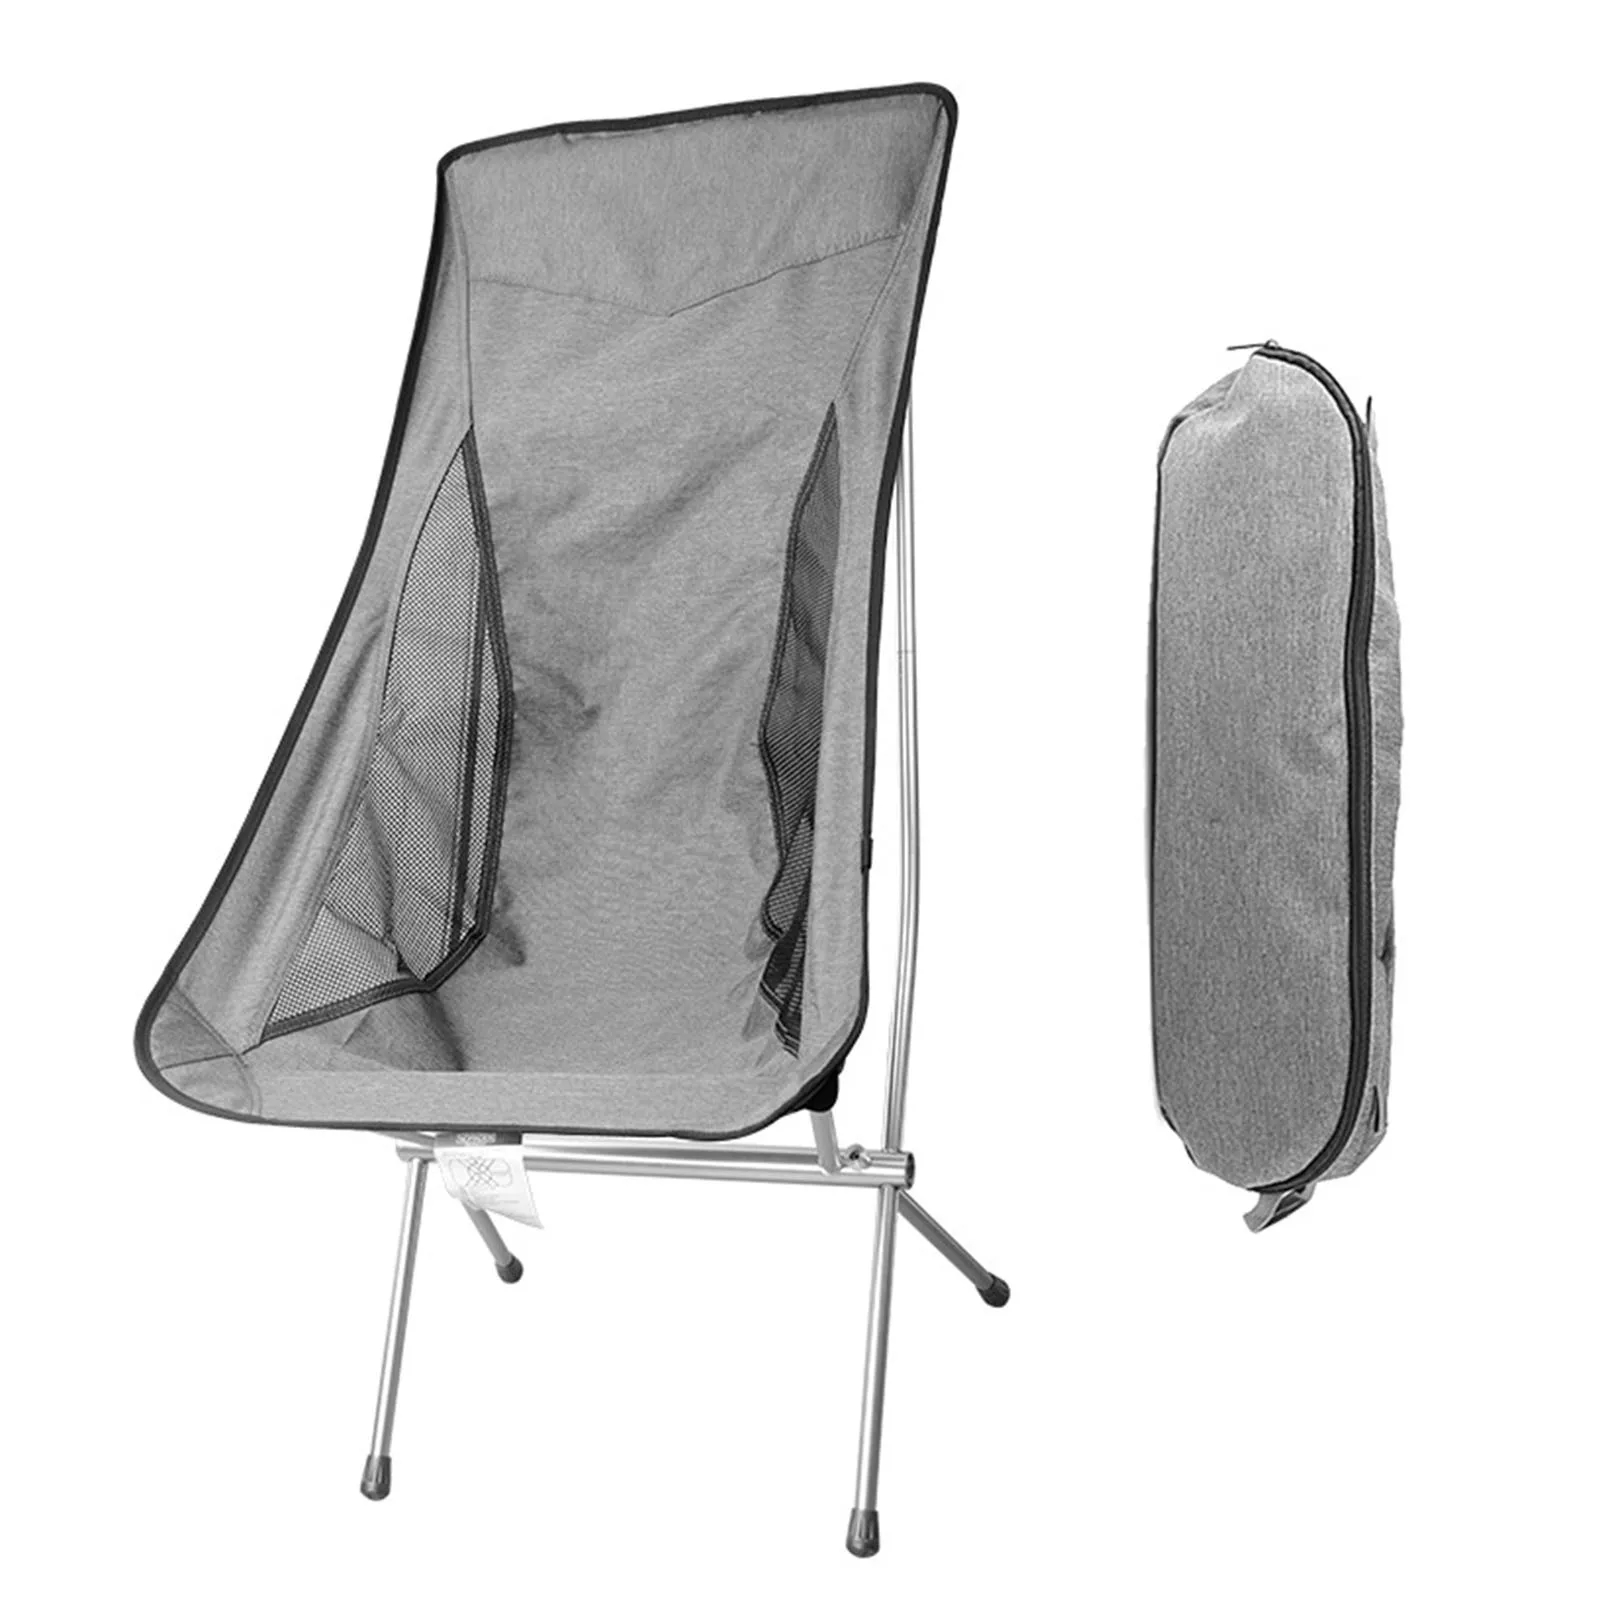 저렴한 야외 휴대용 접는 의자 캠핑 낚시 바베큐 여행 문 의자 초경량 확장 하이킹 피크닉 홈 오피스 의자